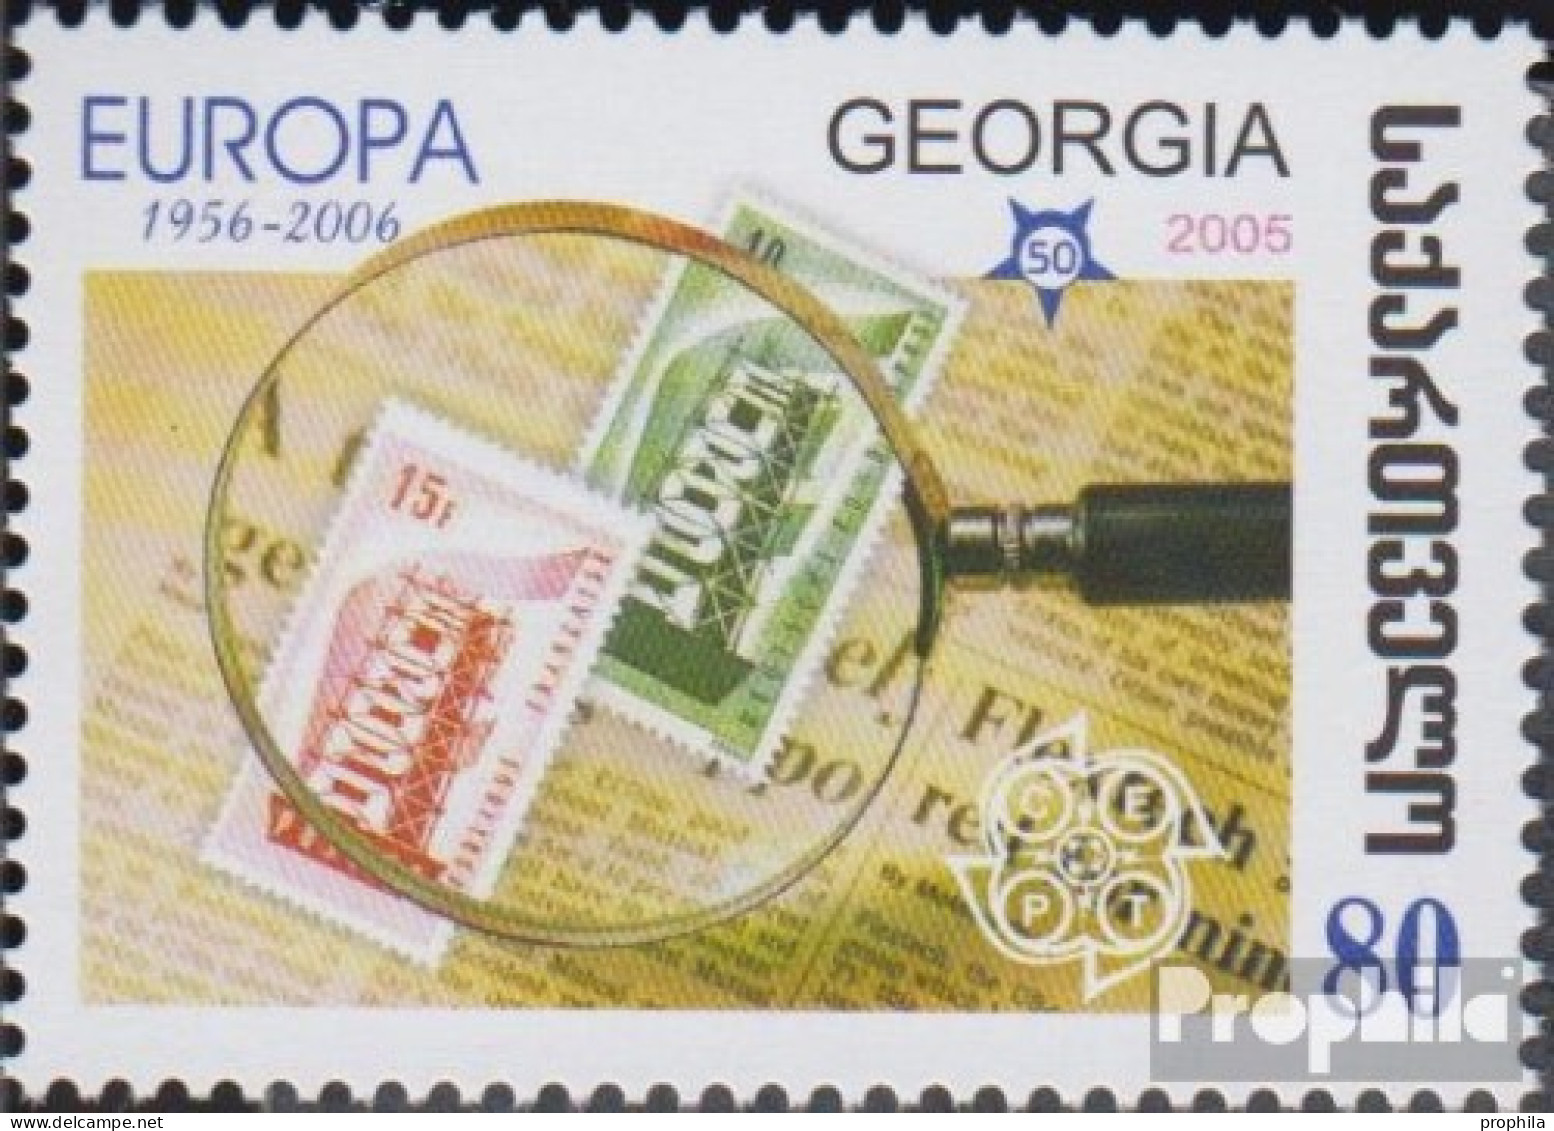 Georgien 513 (kompl.Ausg.) Postfrisch 2006 Europa - Georgien